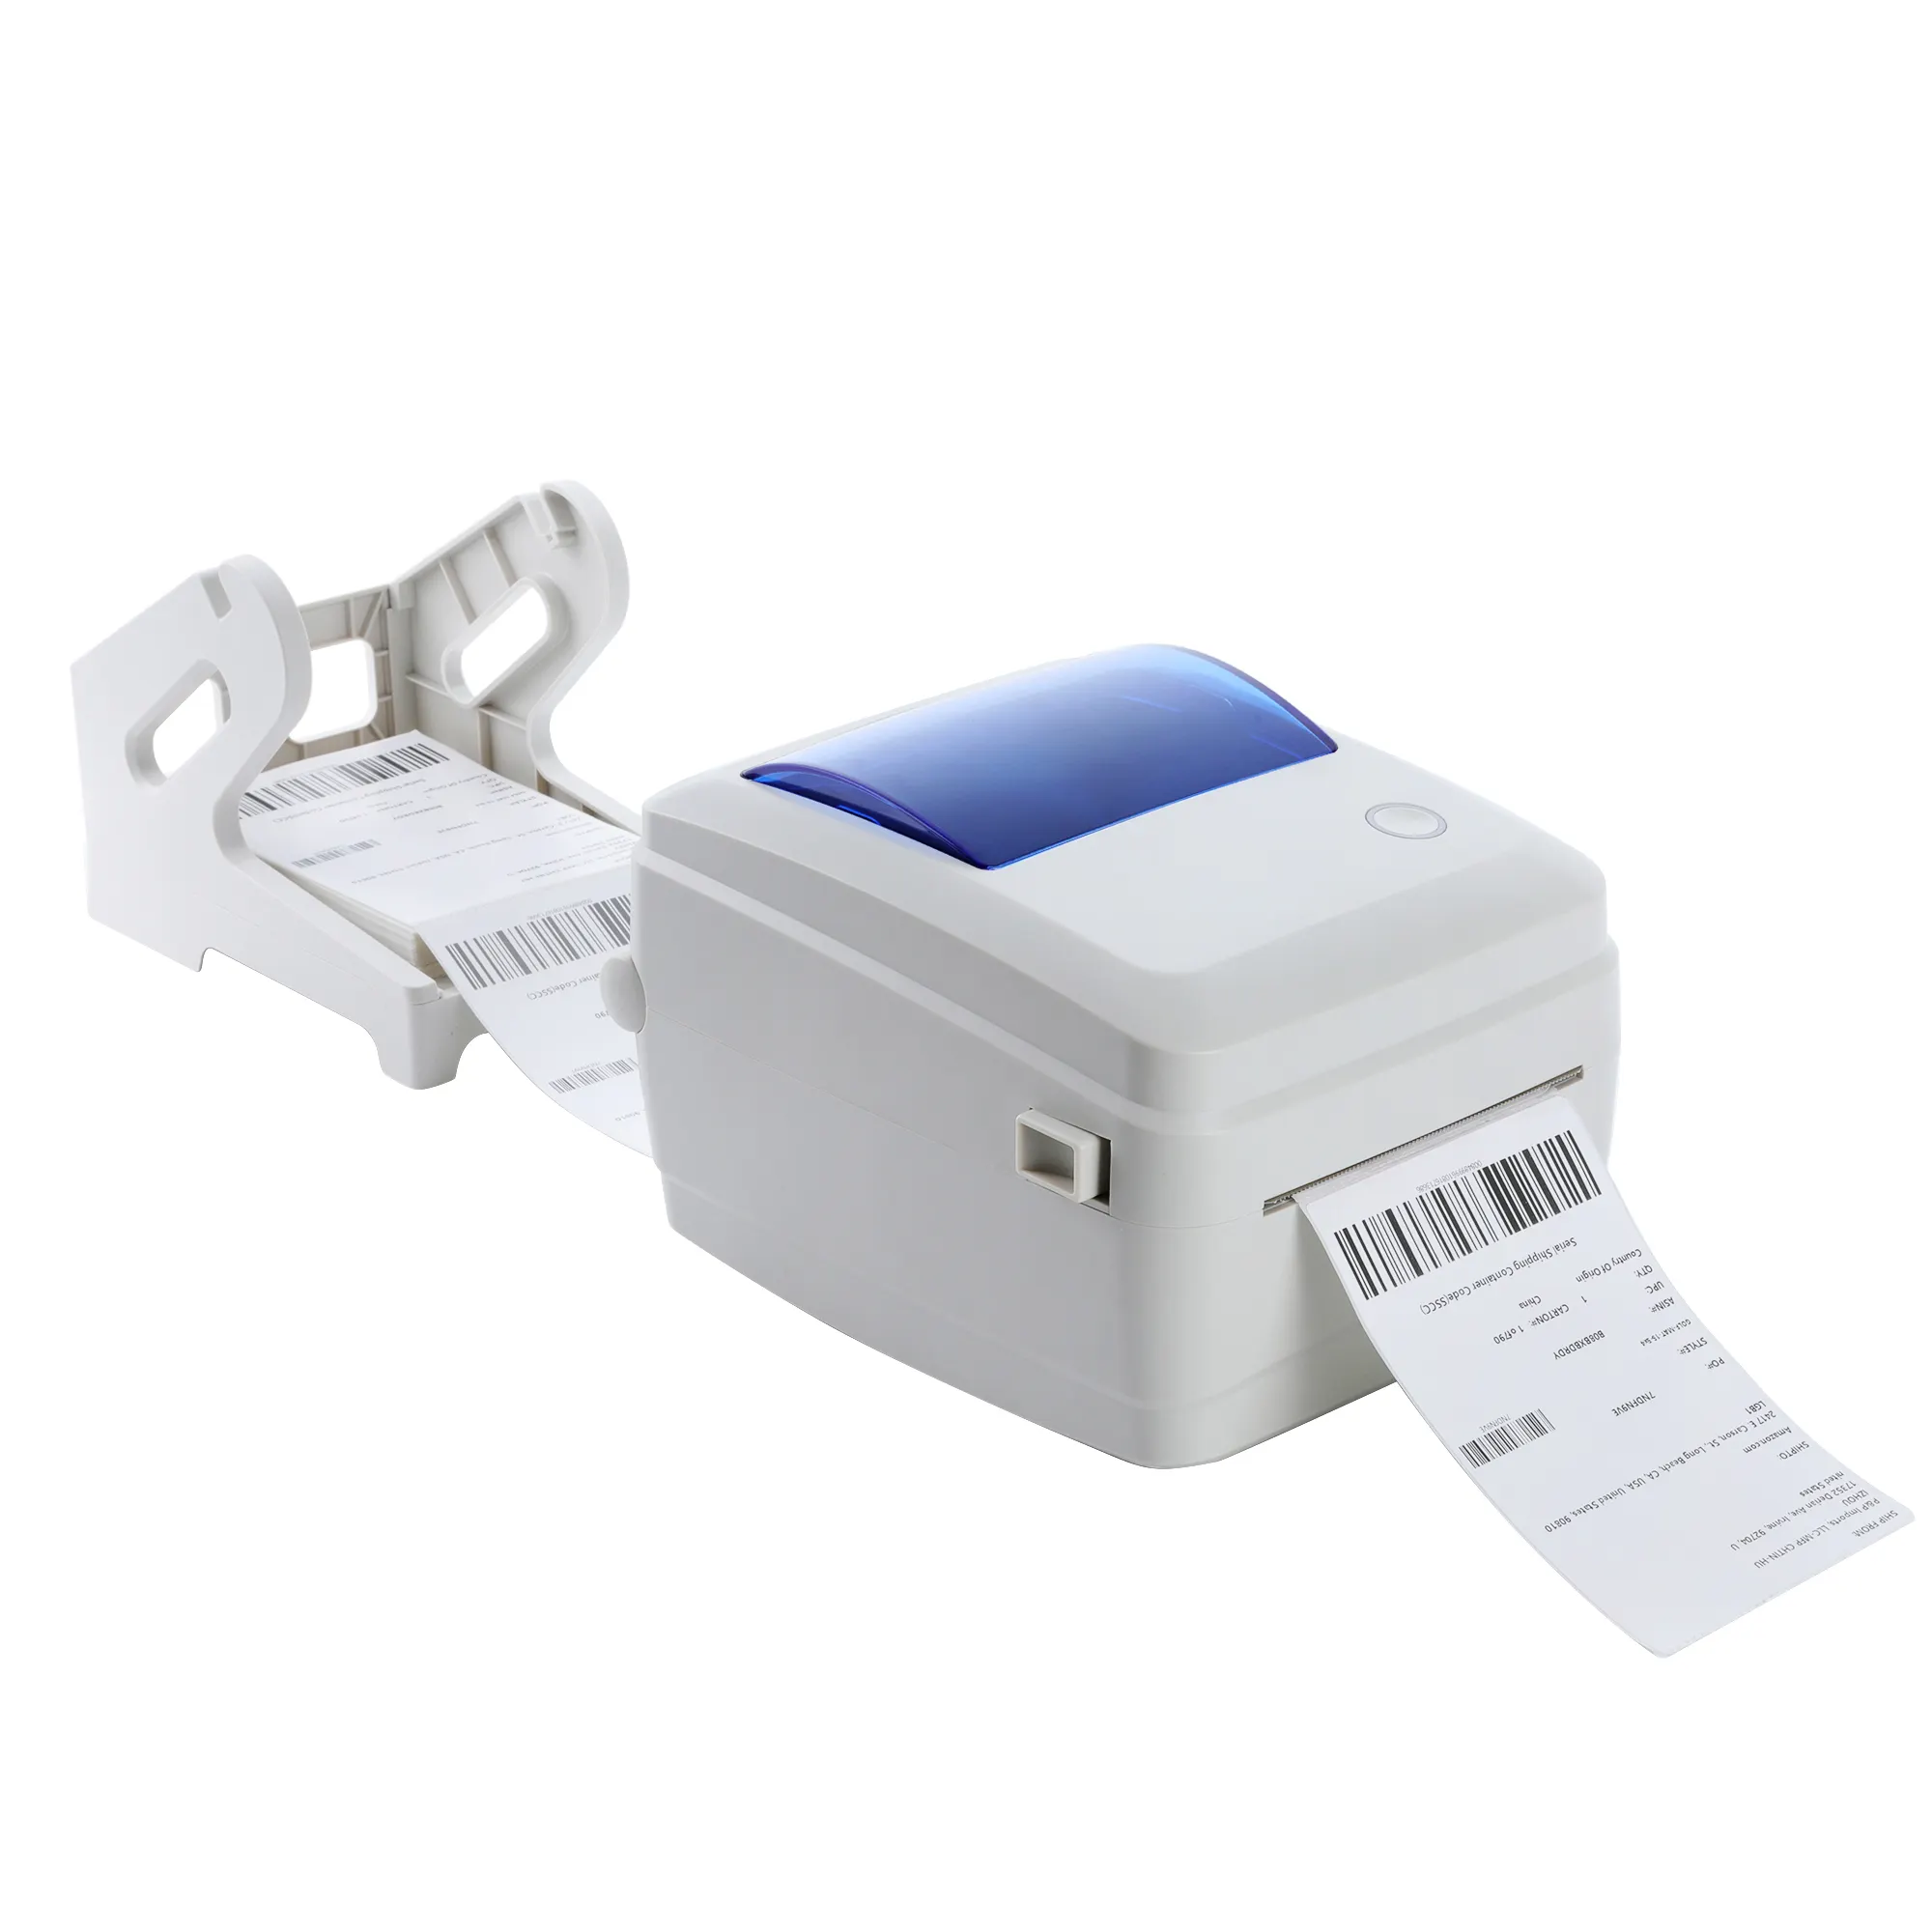 Nuova stampante per etichette di spedizione intelligente bianca originale per Amazon FBA, UPS, USPS, FedEx, Shopee, Wish, EBay e logistica Stock